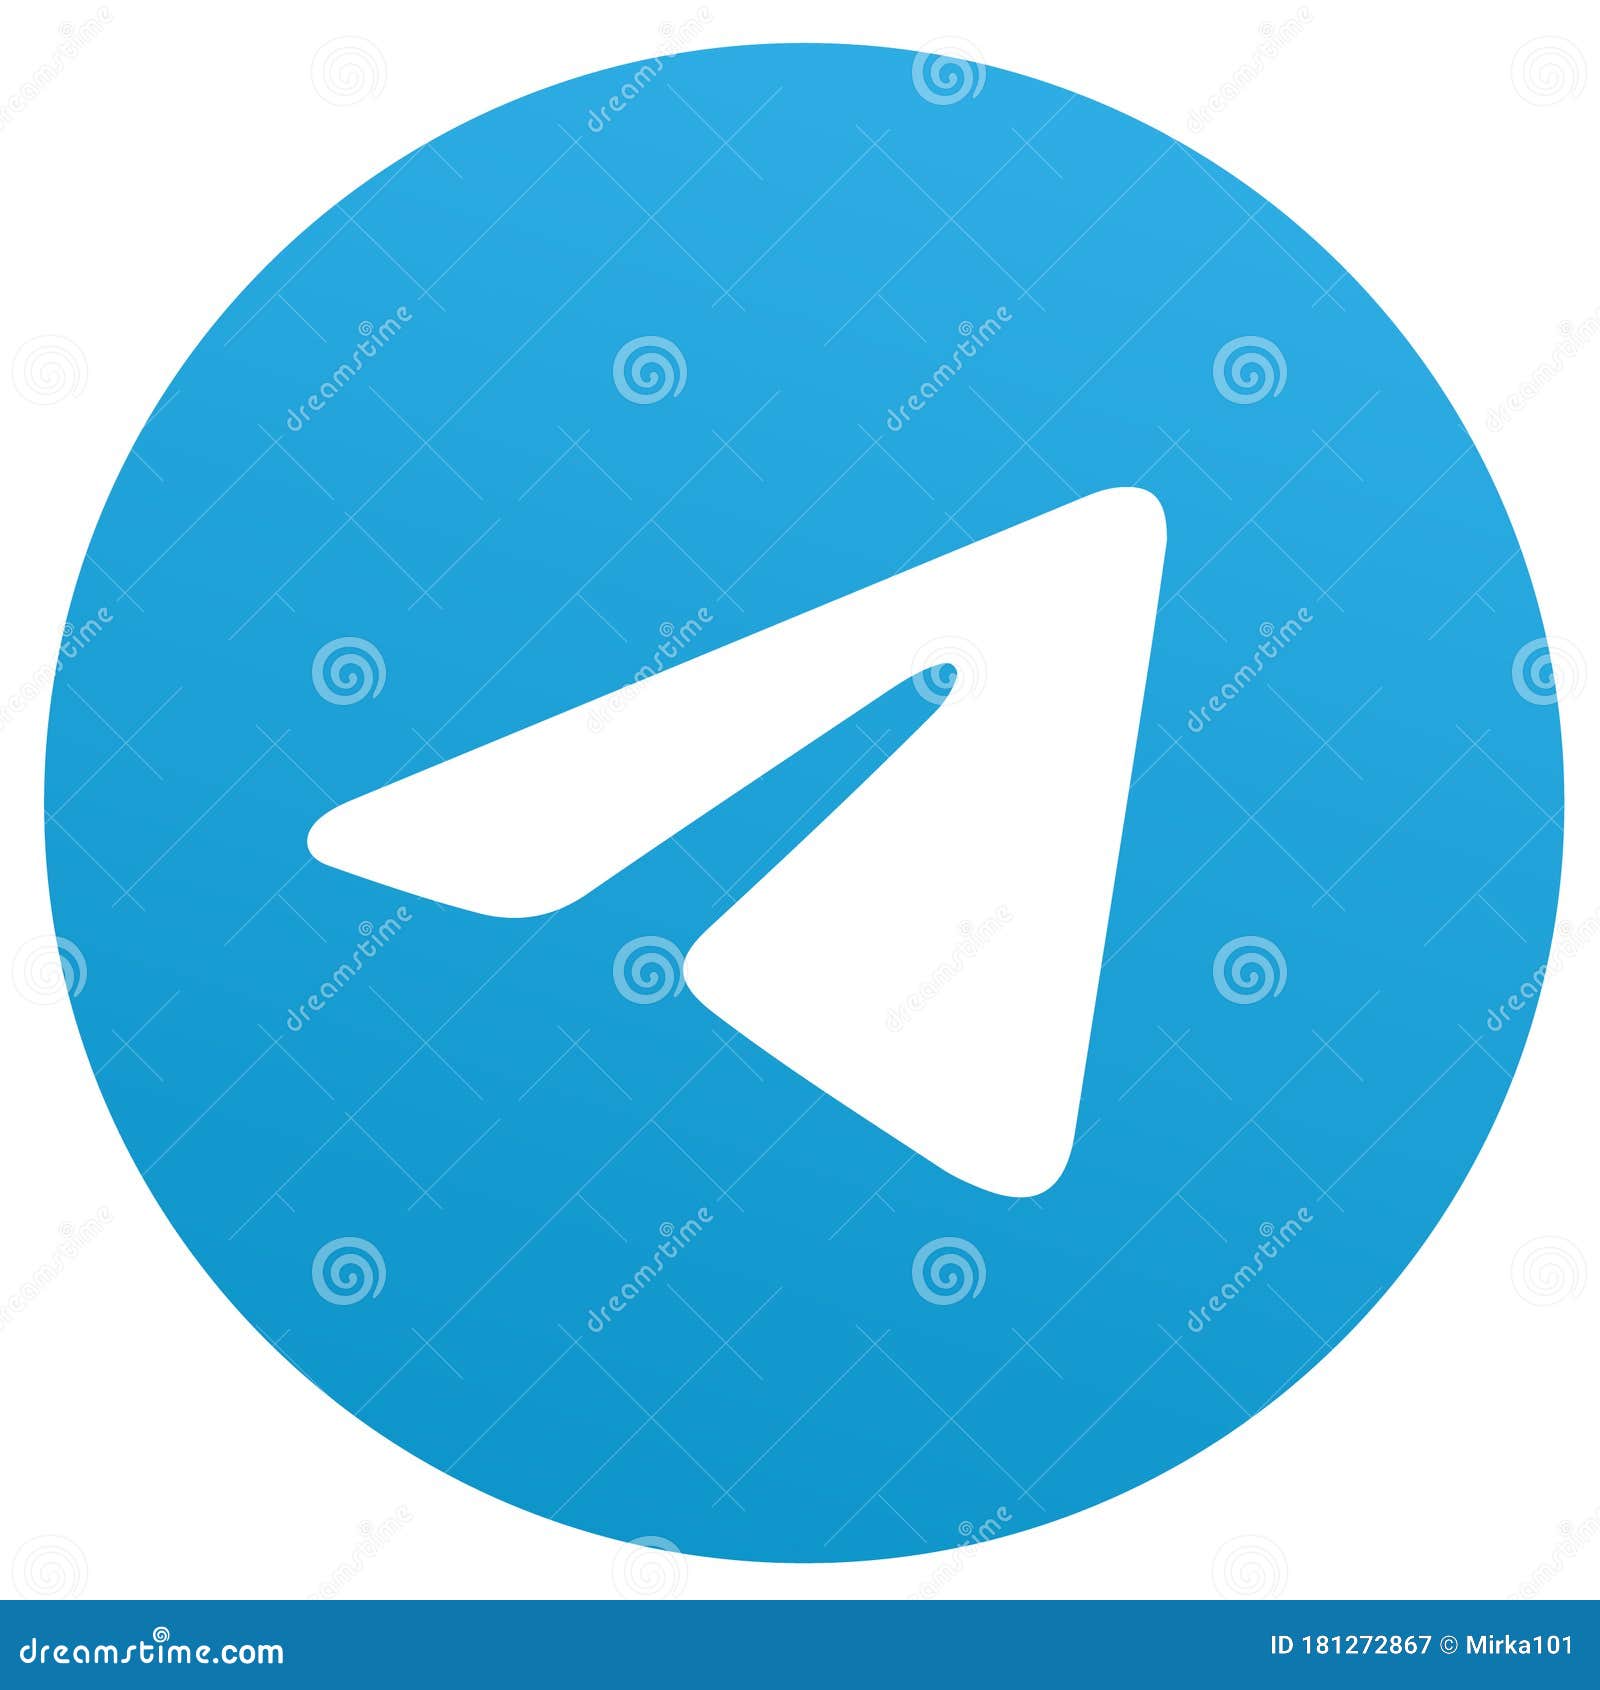 telegram logo,  format  on white background.